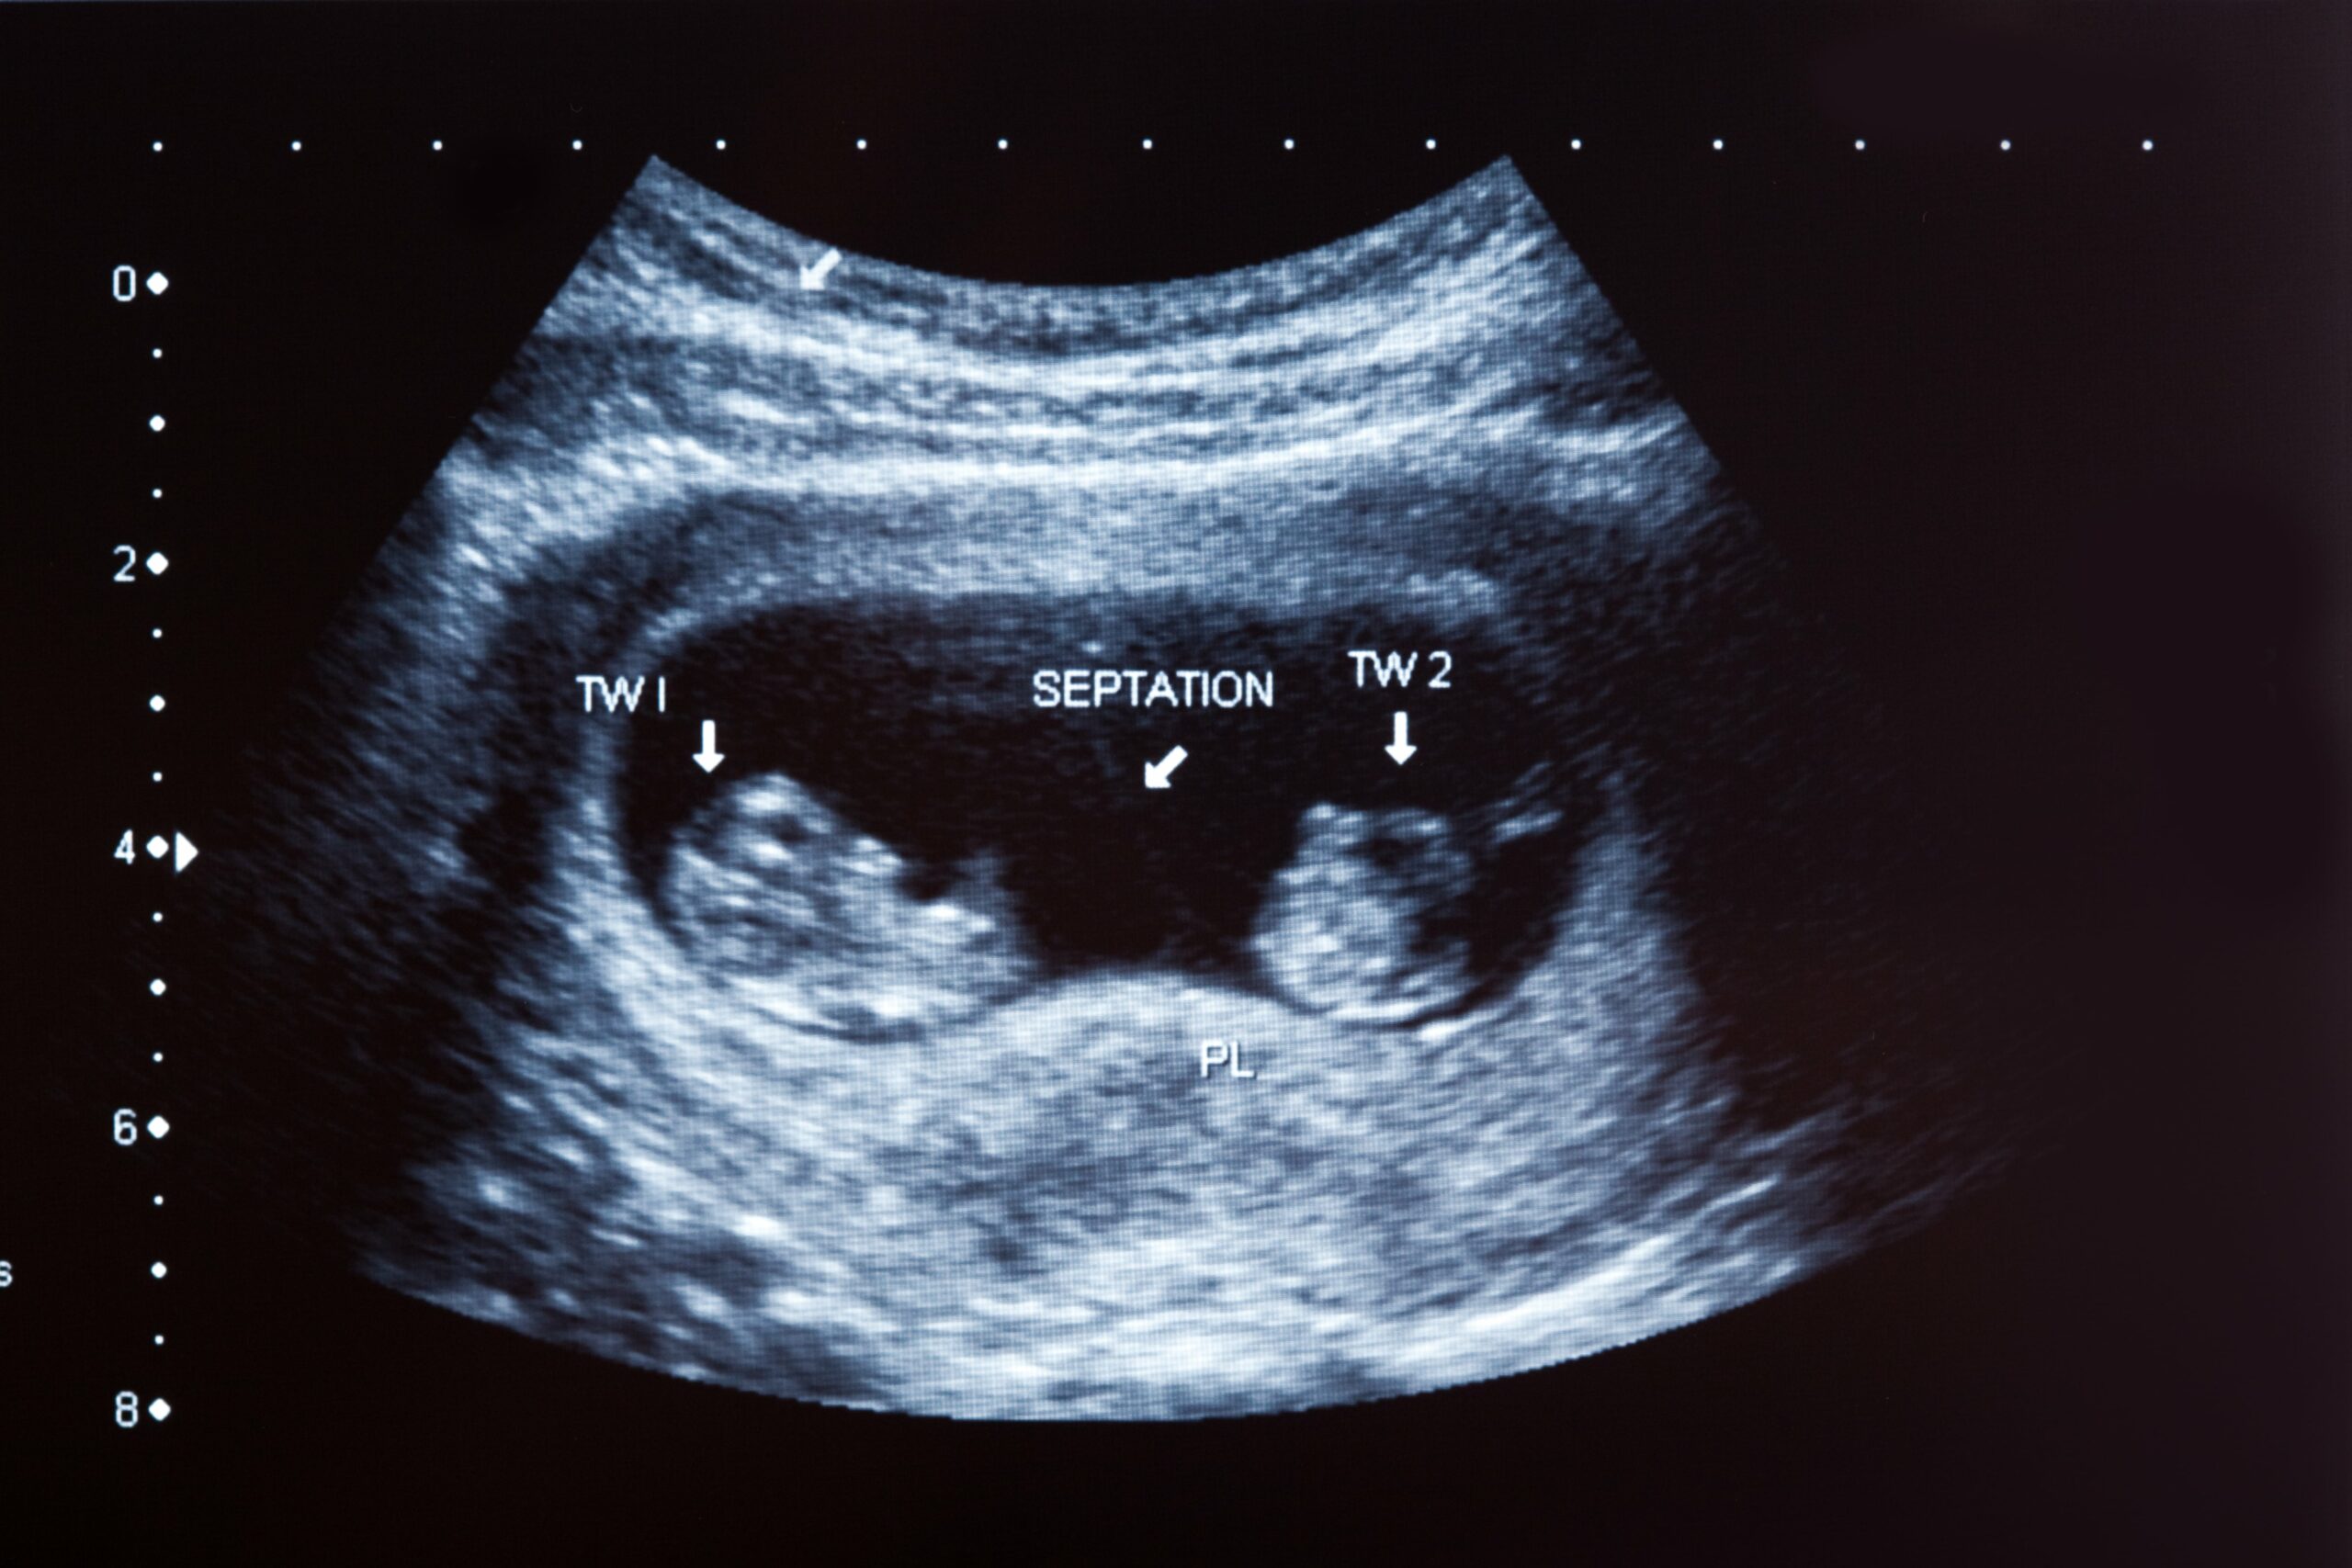 Échographies obstétricales : leur rôle pendant la grossesse